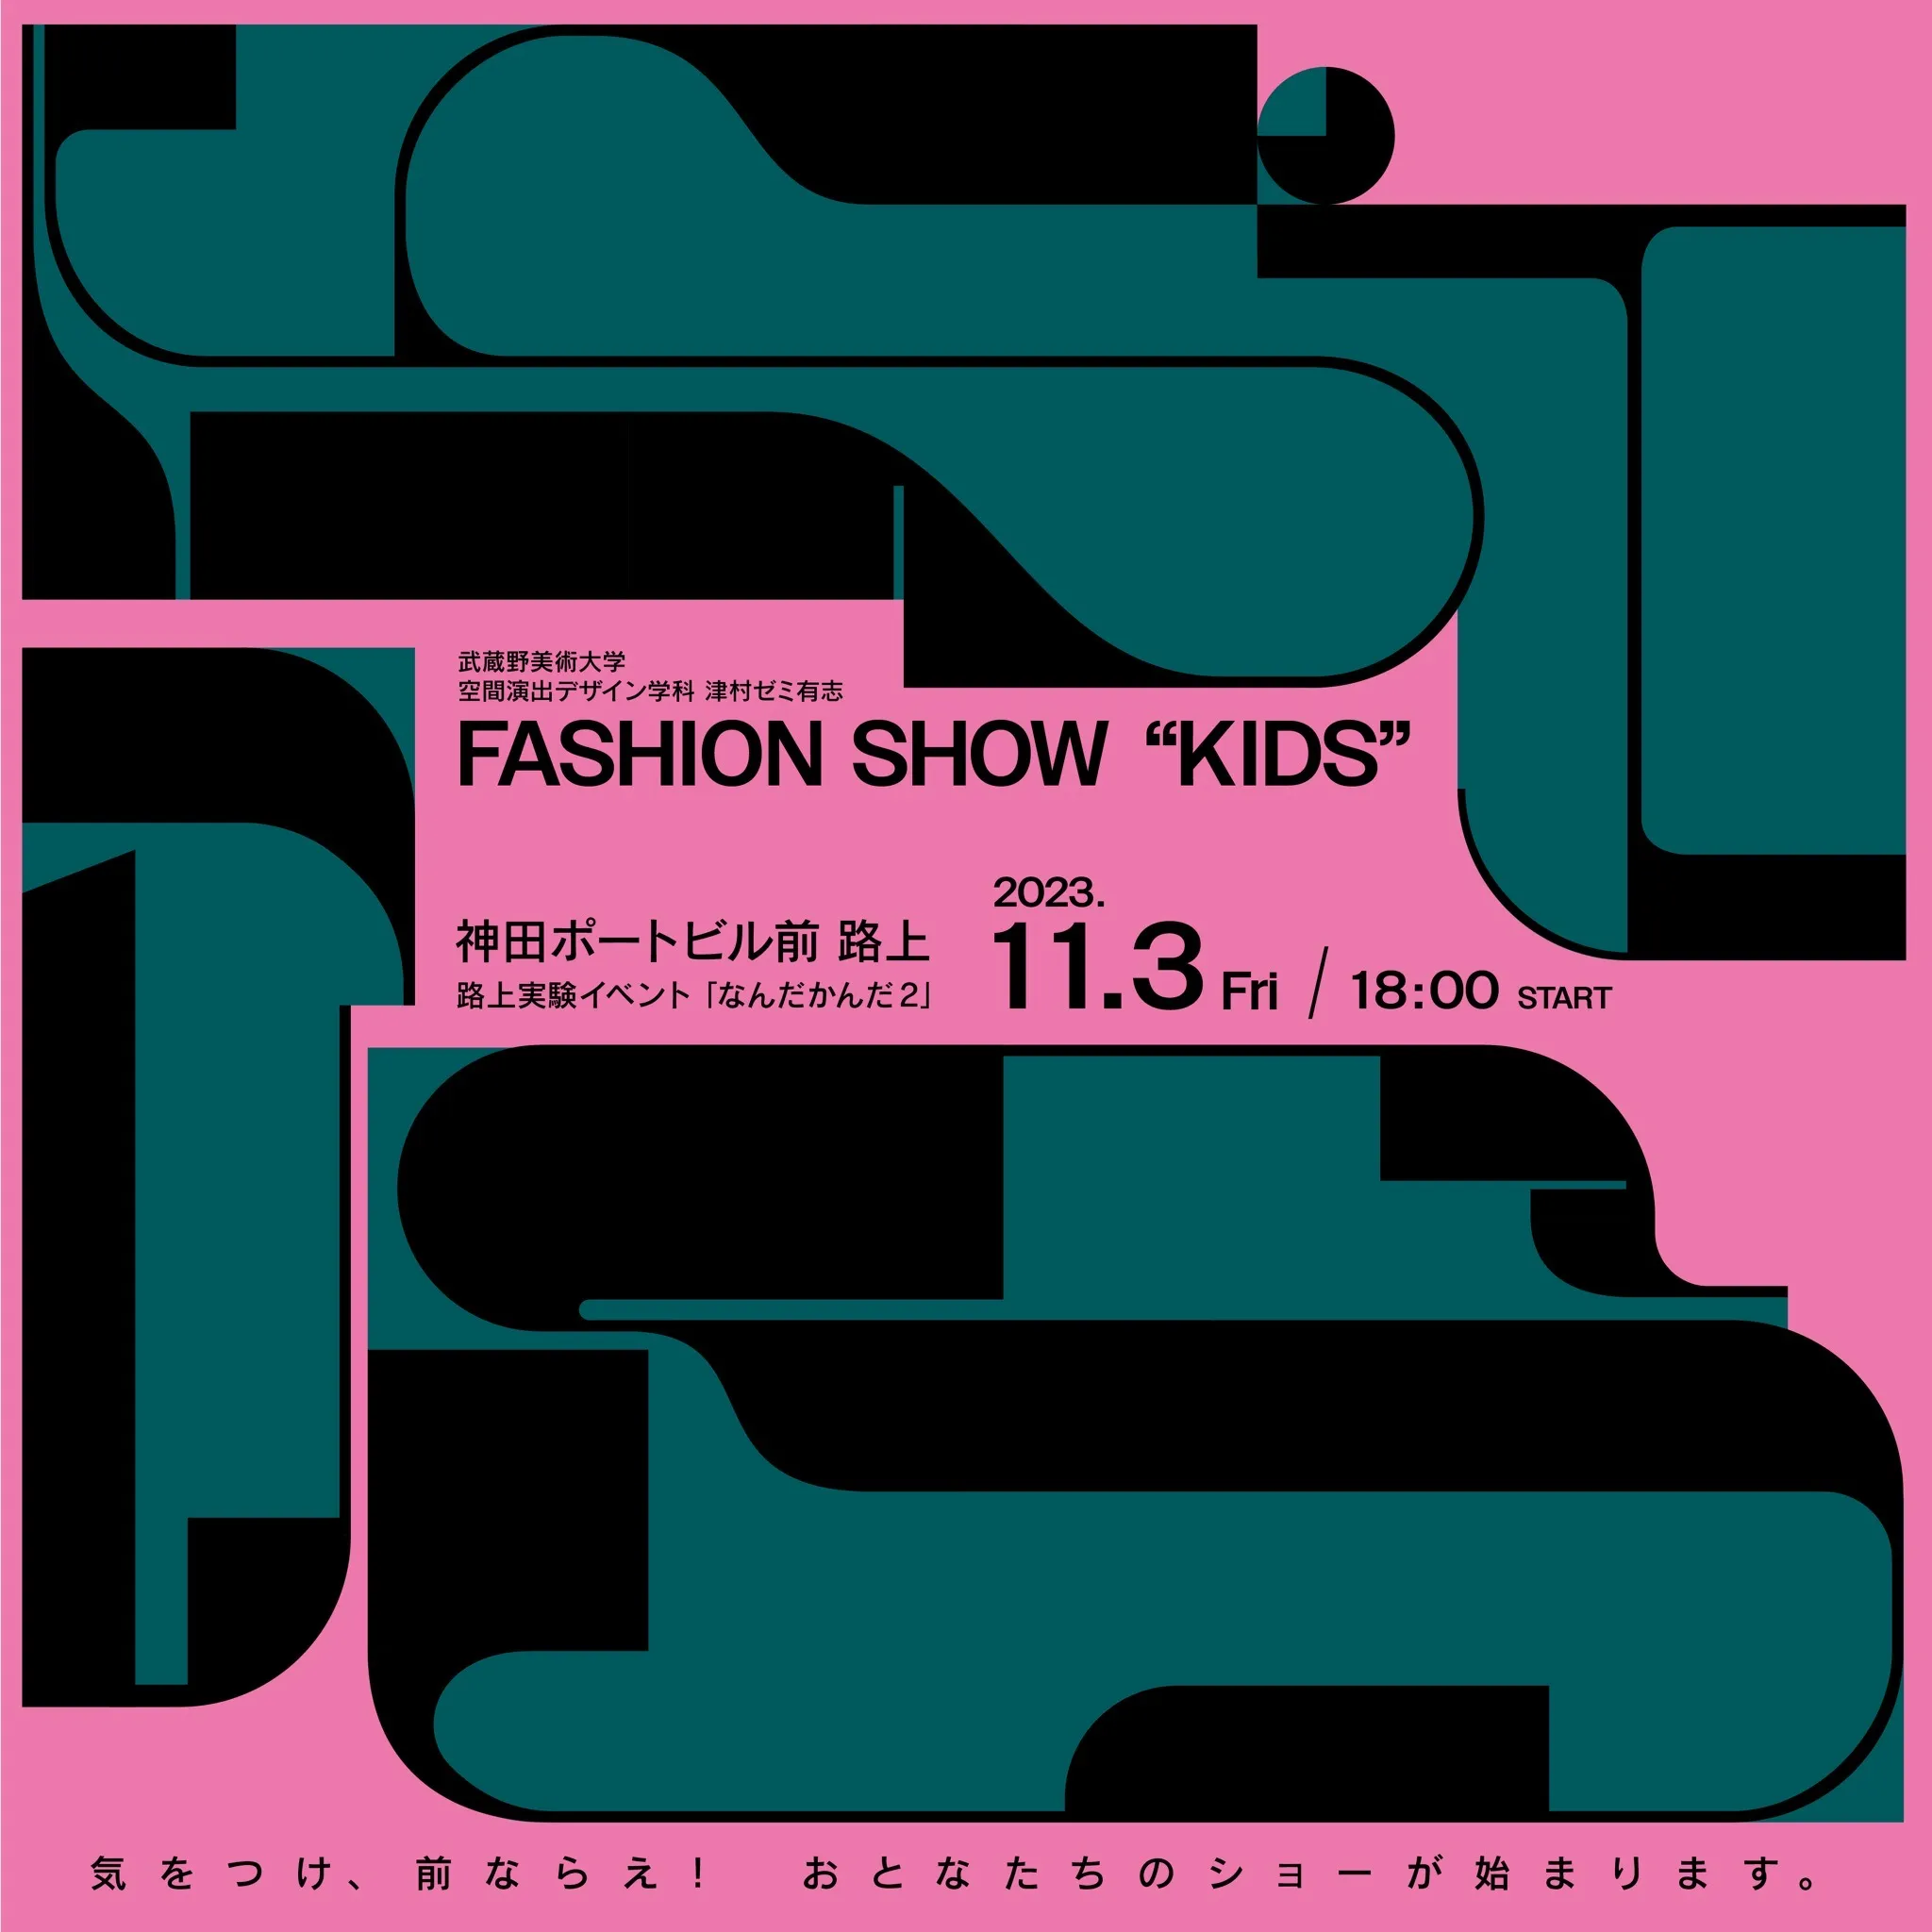 ムサビ津村ゼミナール有志「fashion show 'KIDS'」